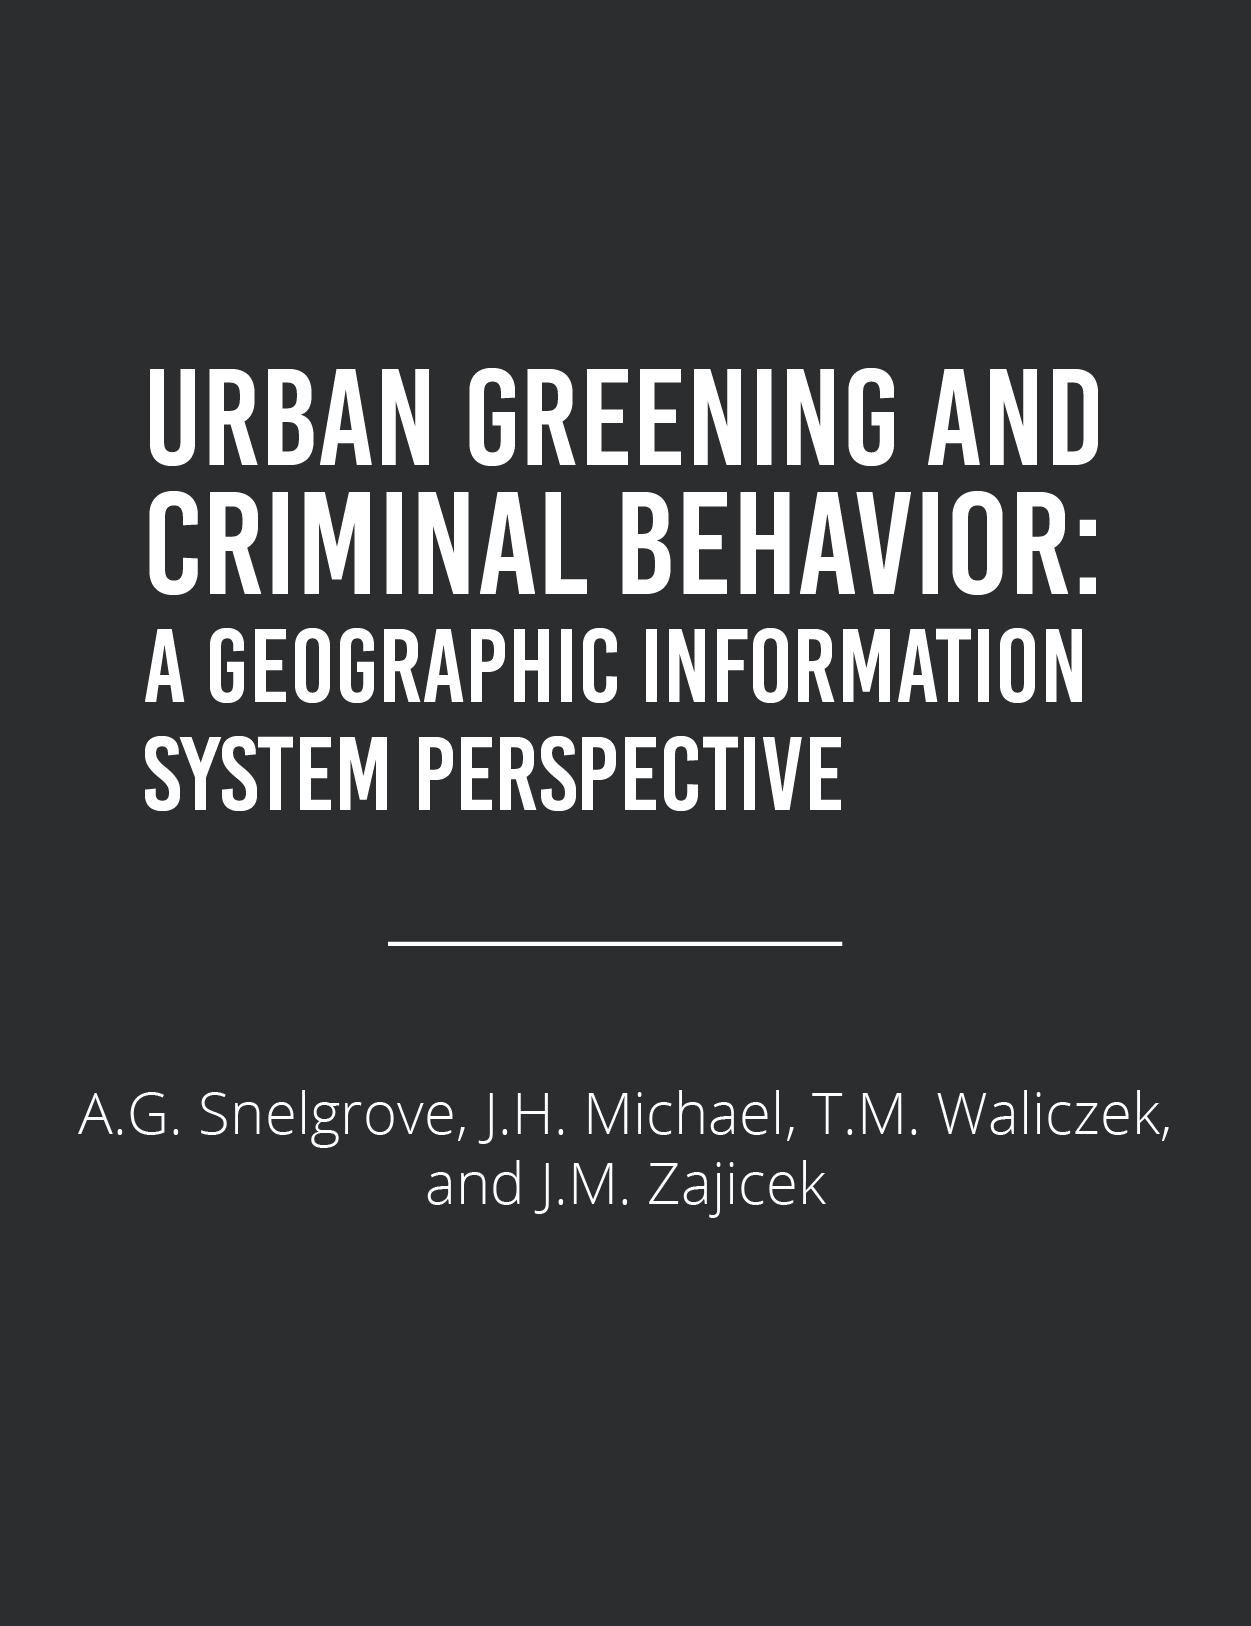 Urban Greening & Criminal BehaviorFeatured Image